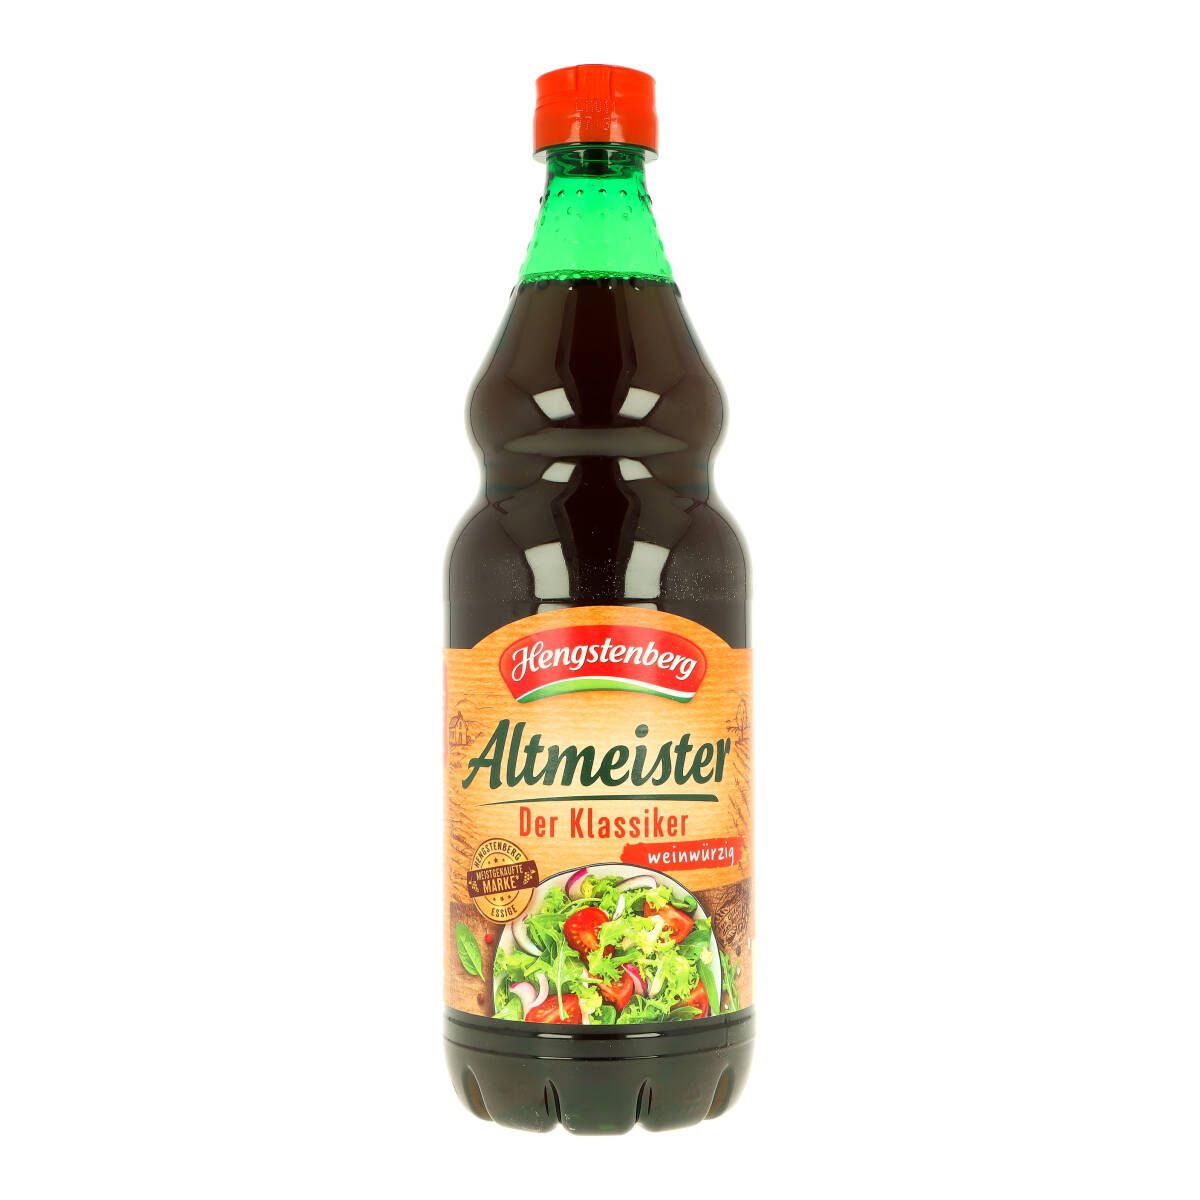 Hengstenberg Germany's Seasoned Altmeister Vinegar